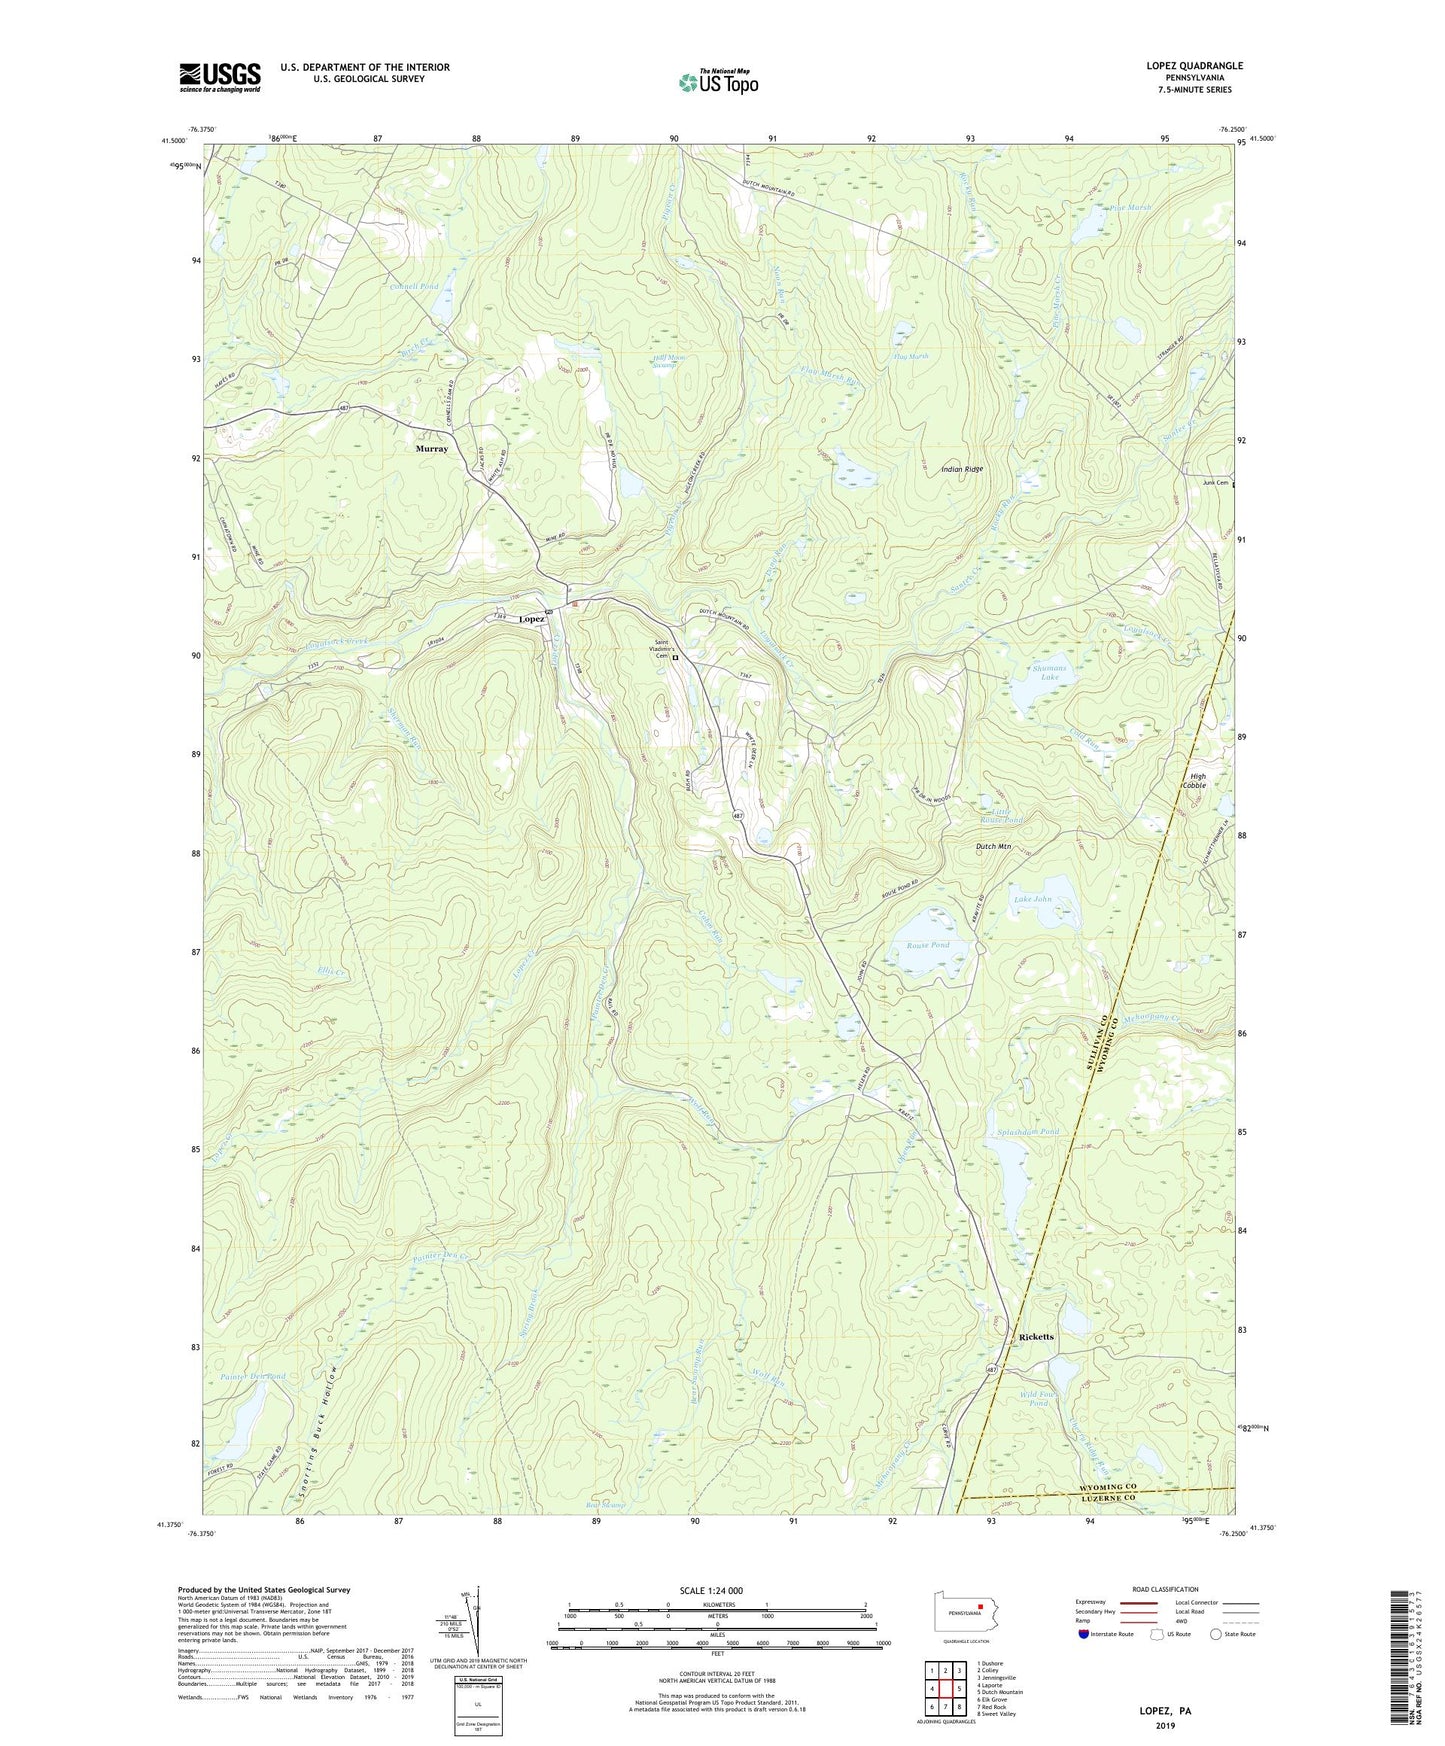 Lopez Pennsylvania US Topo Map Image